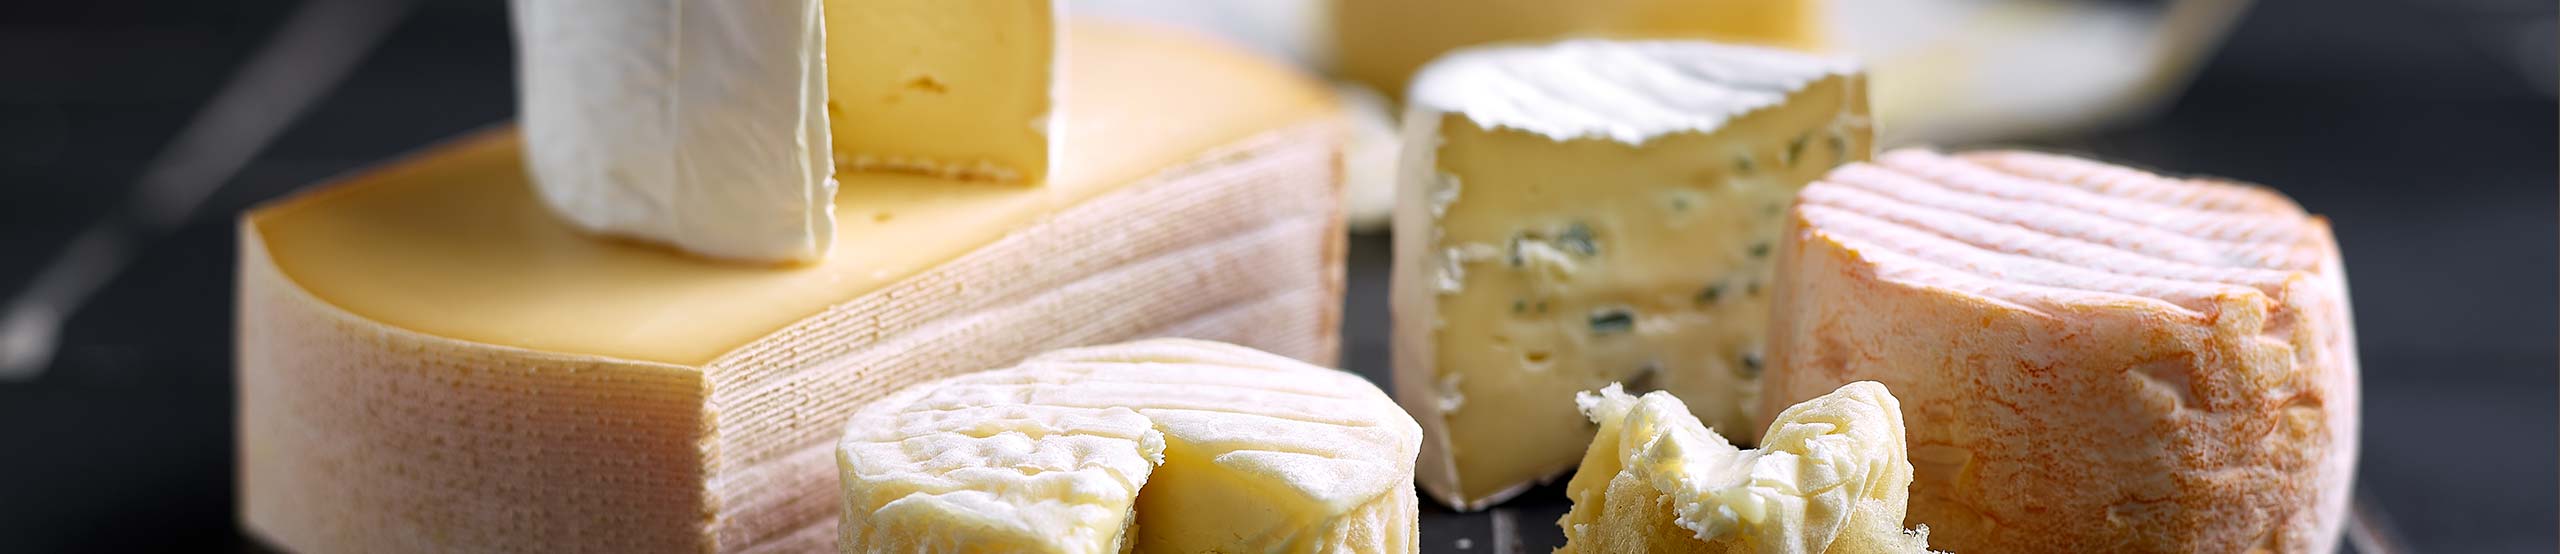 Plateau de fromages de la fromagerie Terre de fromages